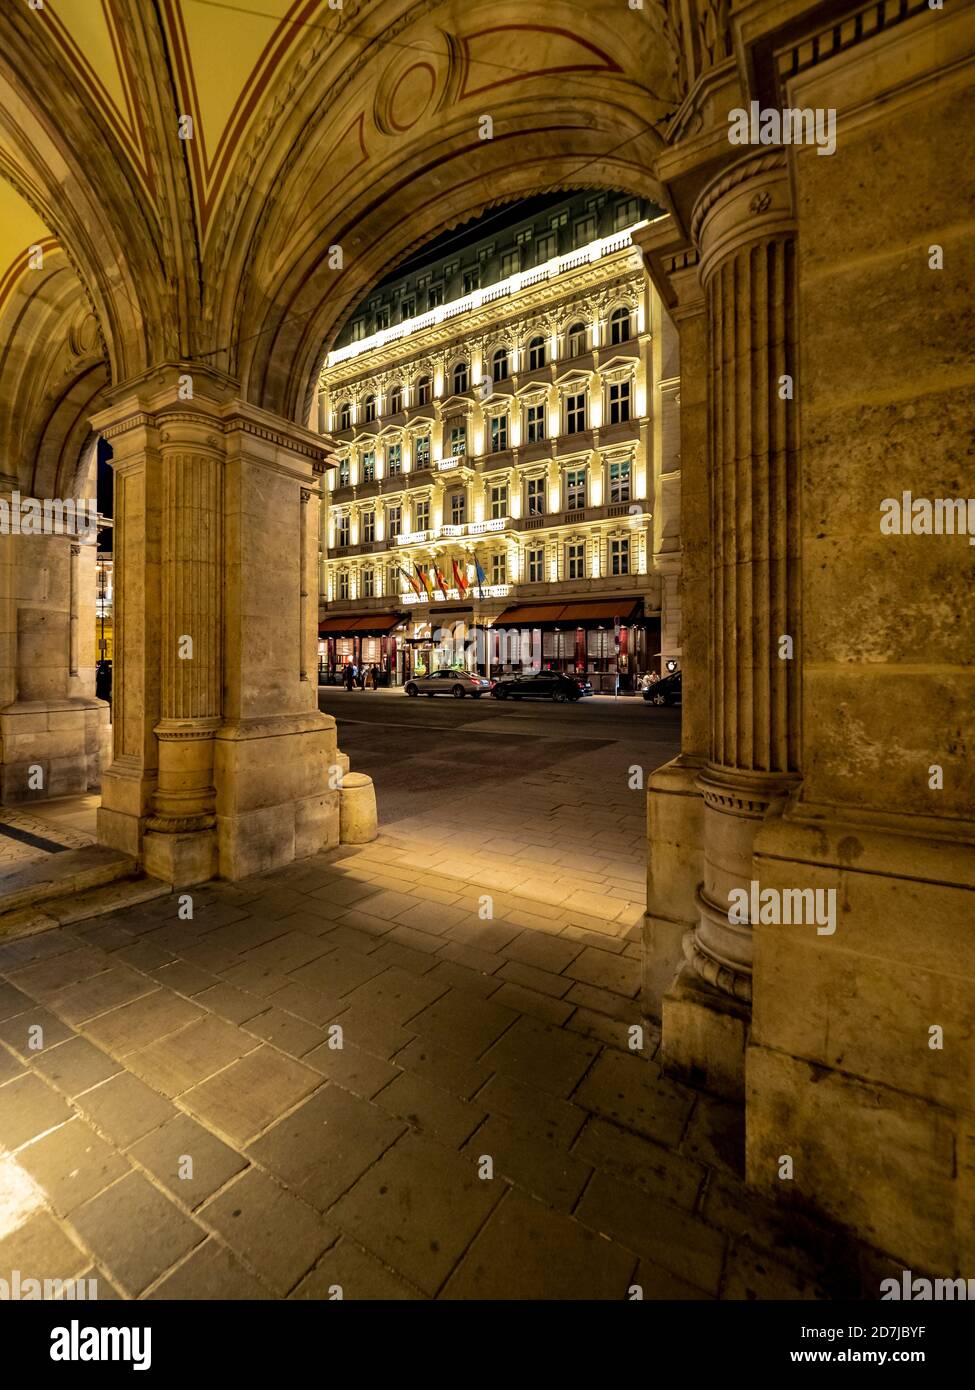 Autriche, Vienne, trottoir couvert devant l'hôtel Sacher la nuit Banque D'Images